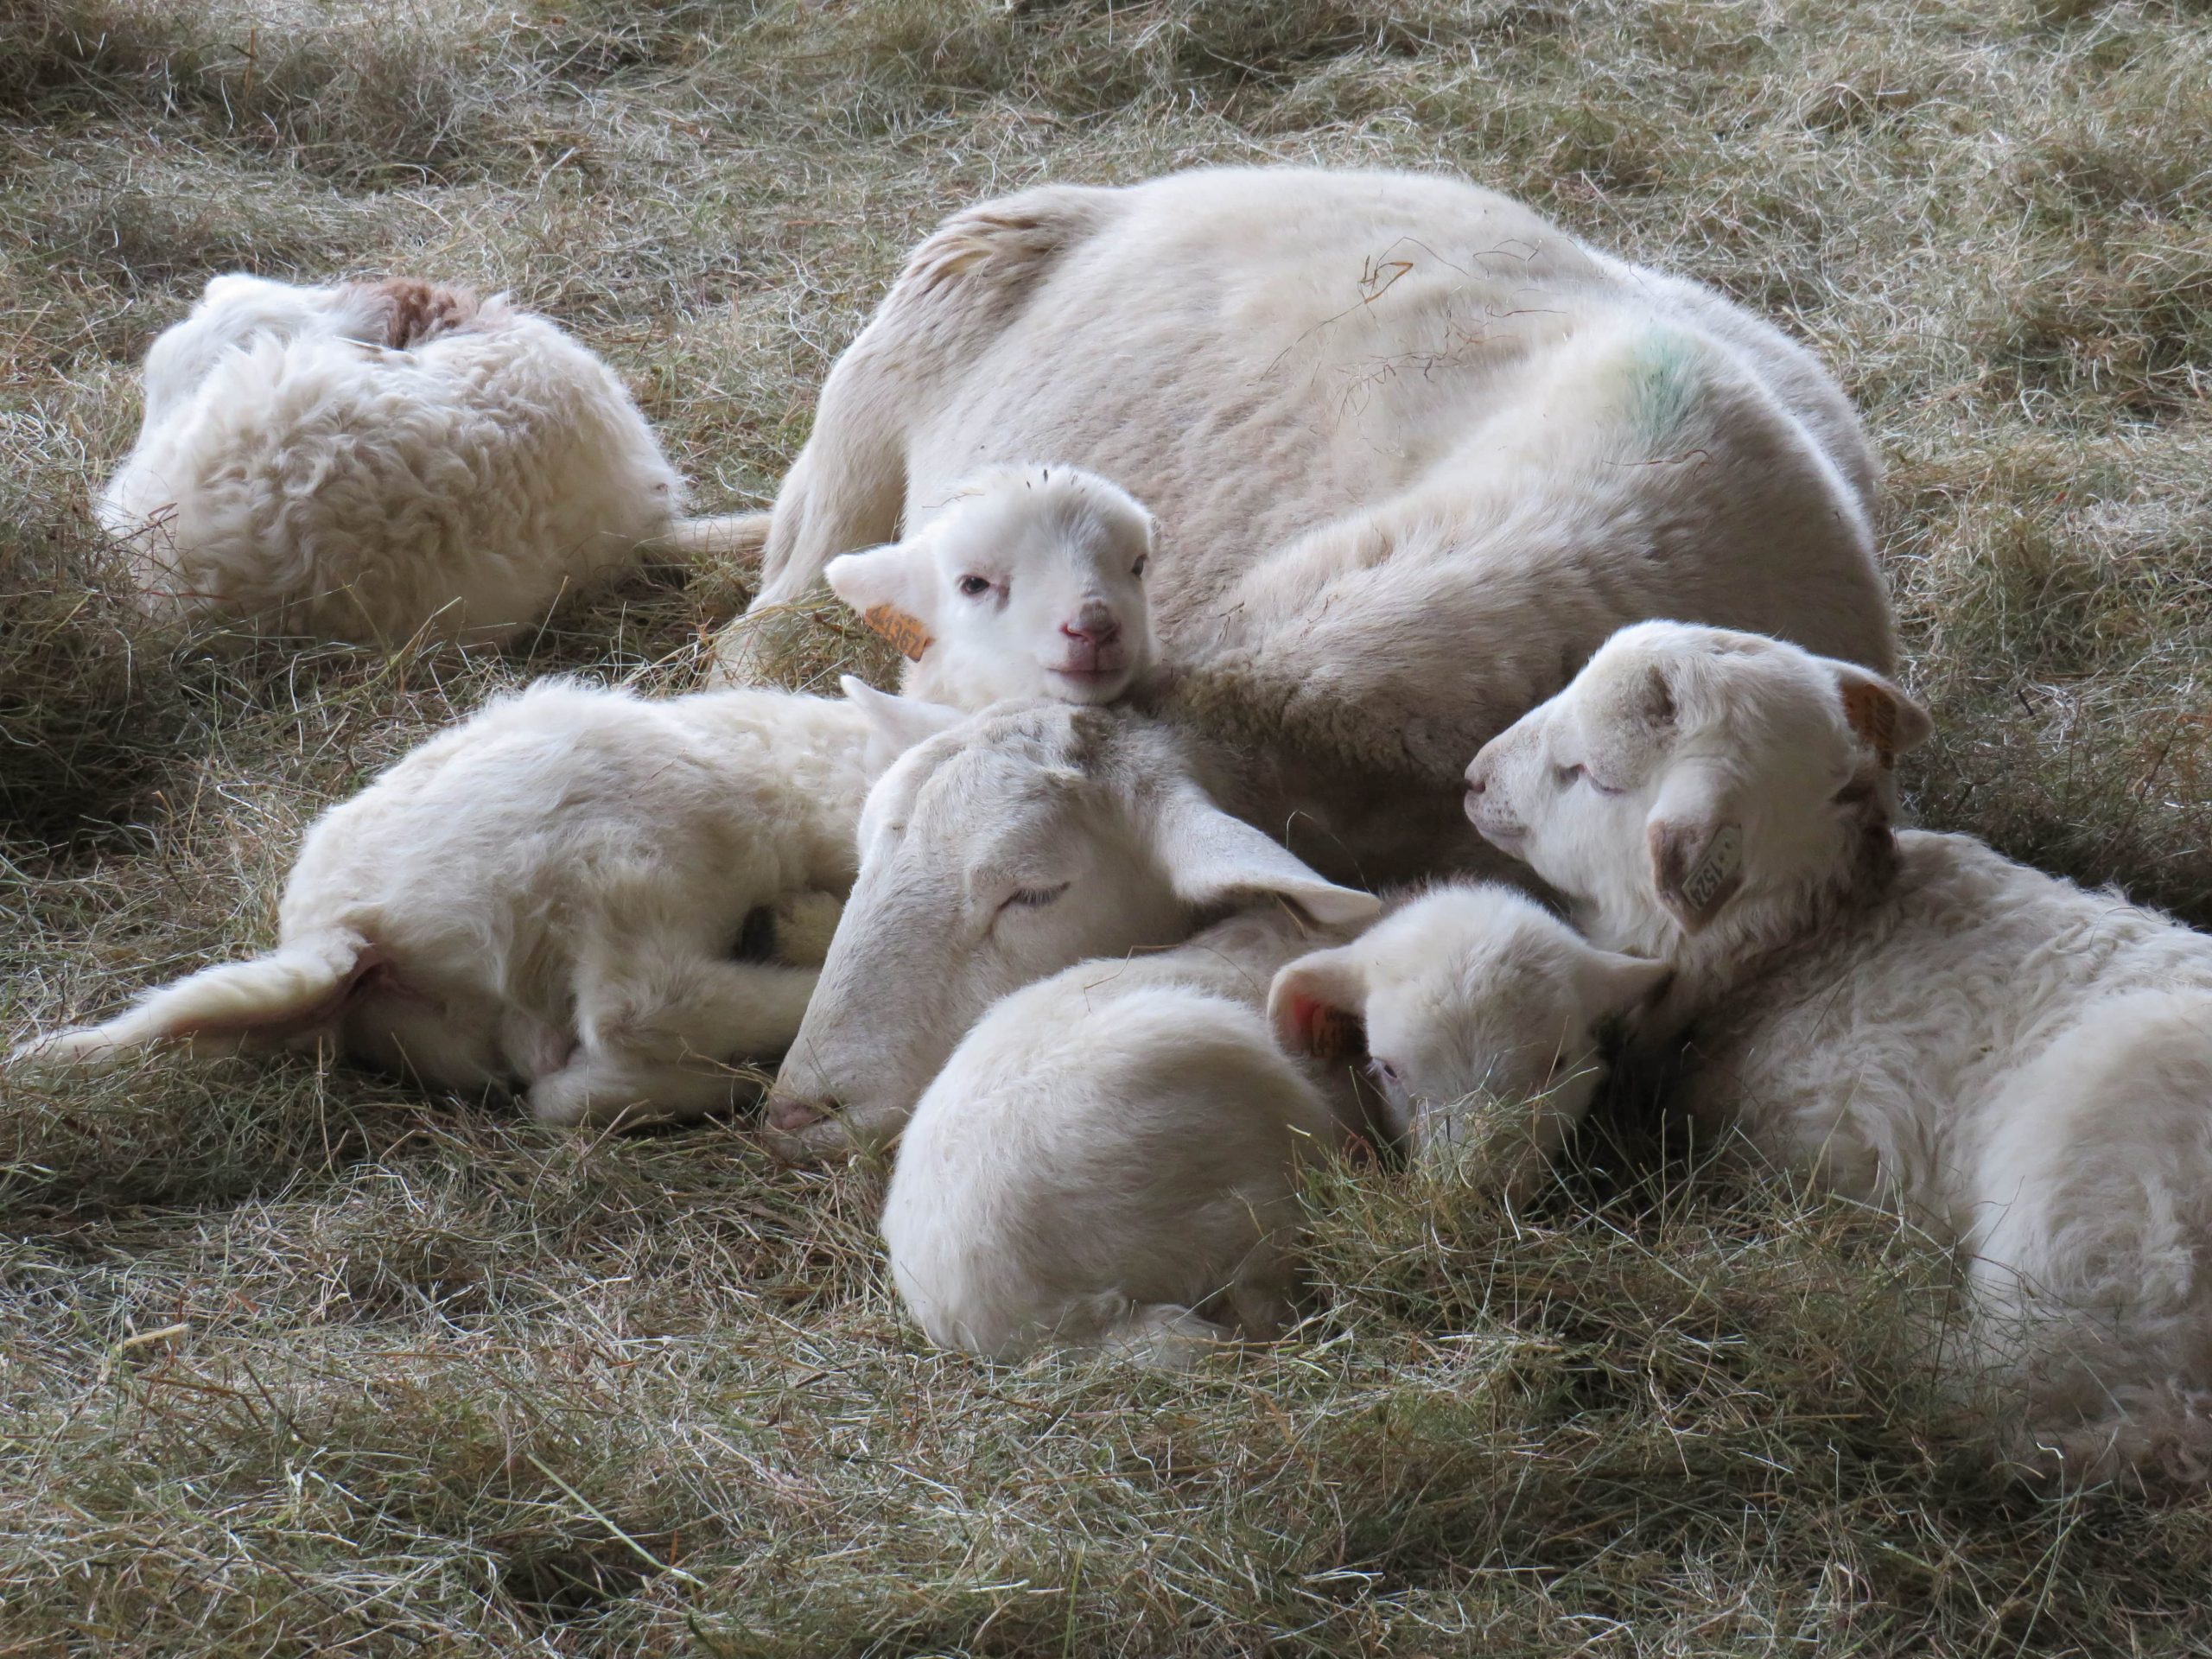 Resting ewe with triplet lambs.